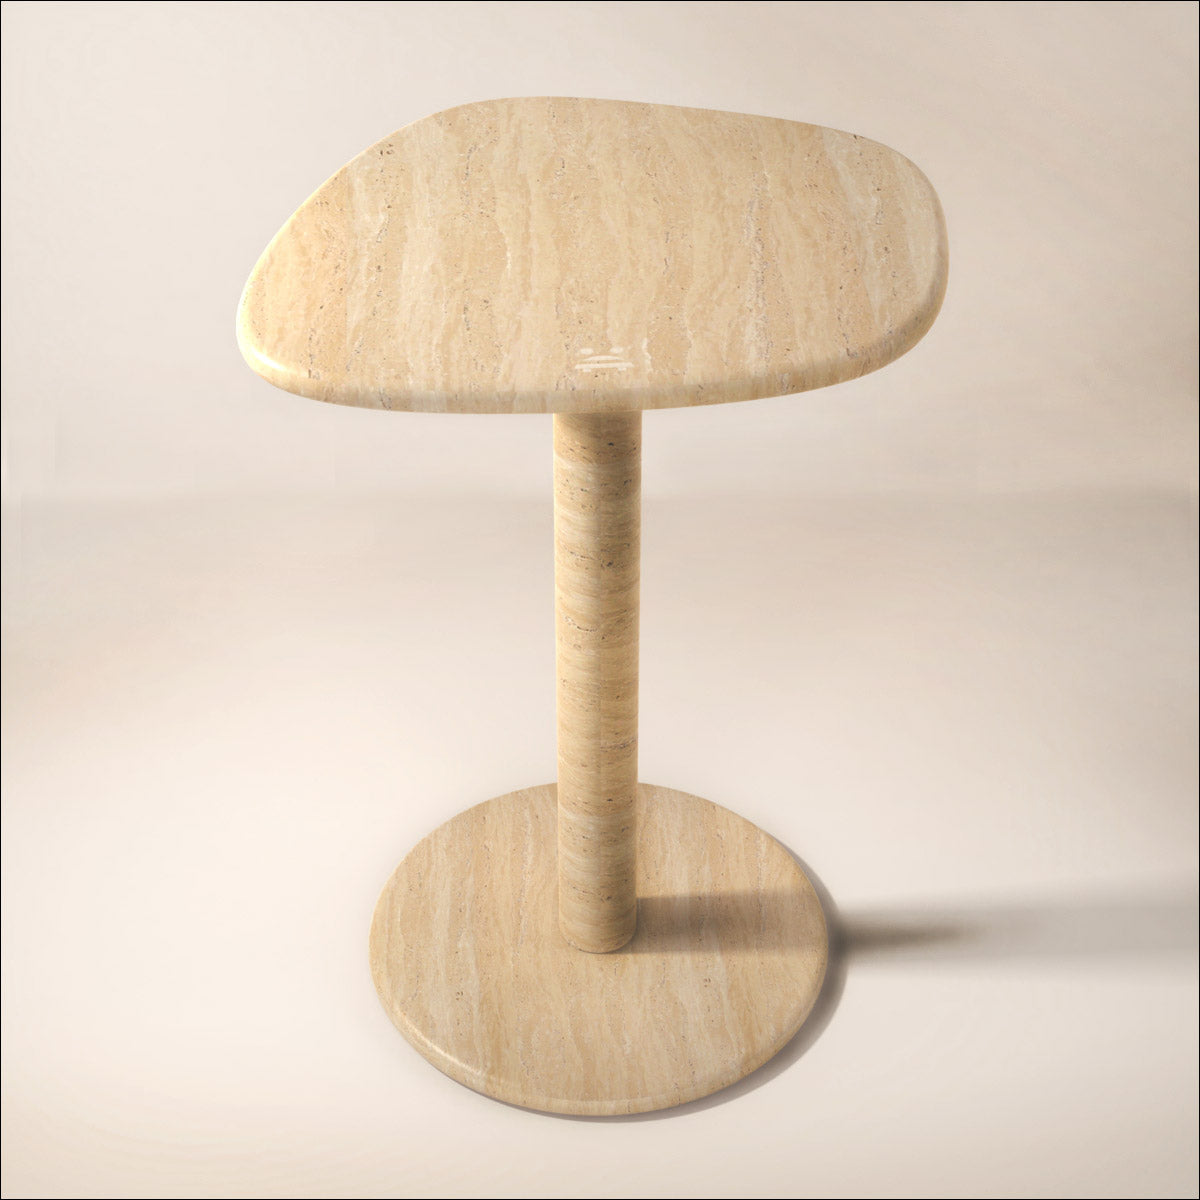 OIXDESIGN ZenPebble Tall Side Table, Italian Classico Travertine, Micro Scene Graph, Front View